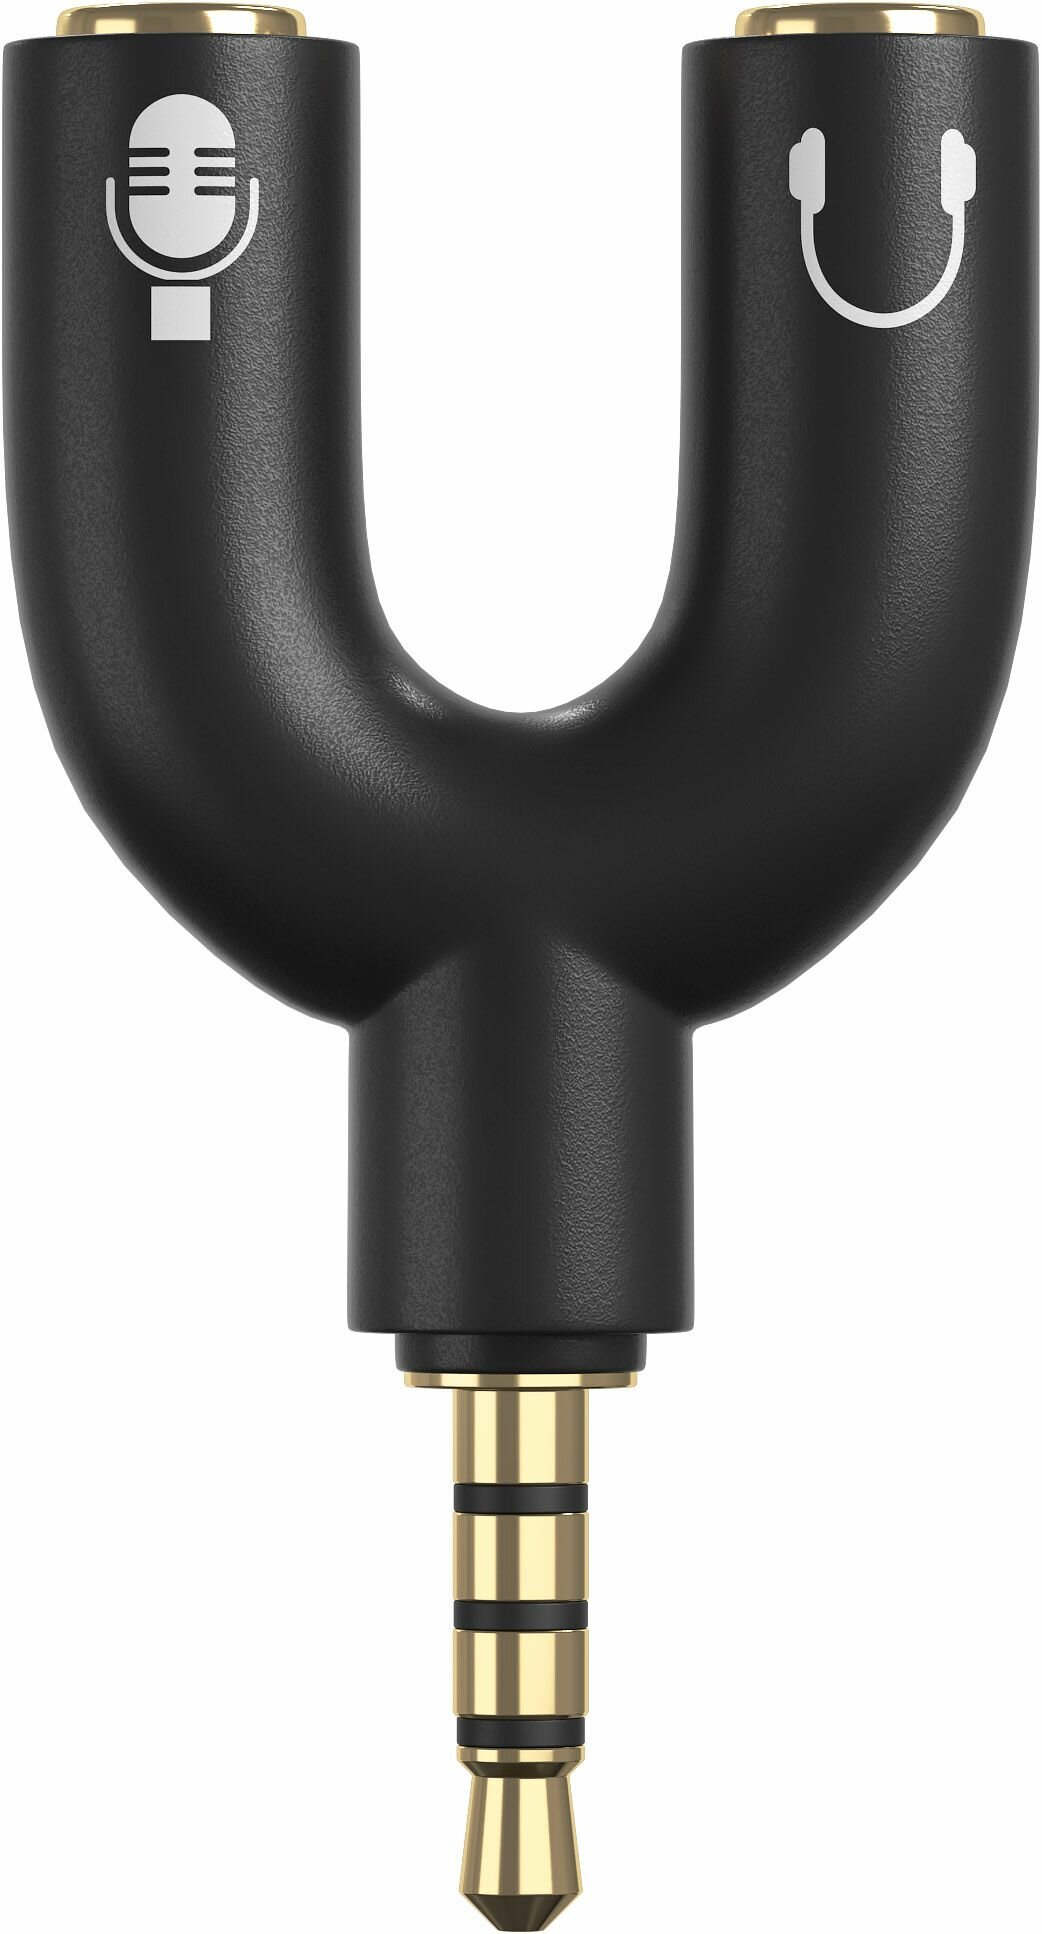 Аудио переходник разветвитель адаптер AUX сплиттер GSMIN Taurus на микрофон и наушники Mini Jack джек 3.5 мм для смартфона ноутбука (Черный)